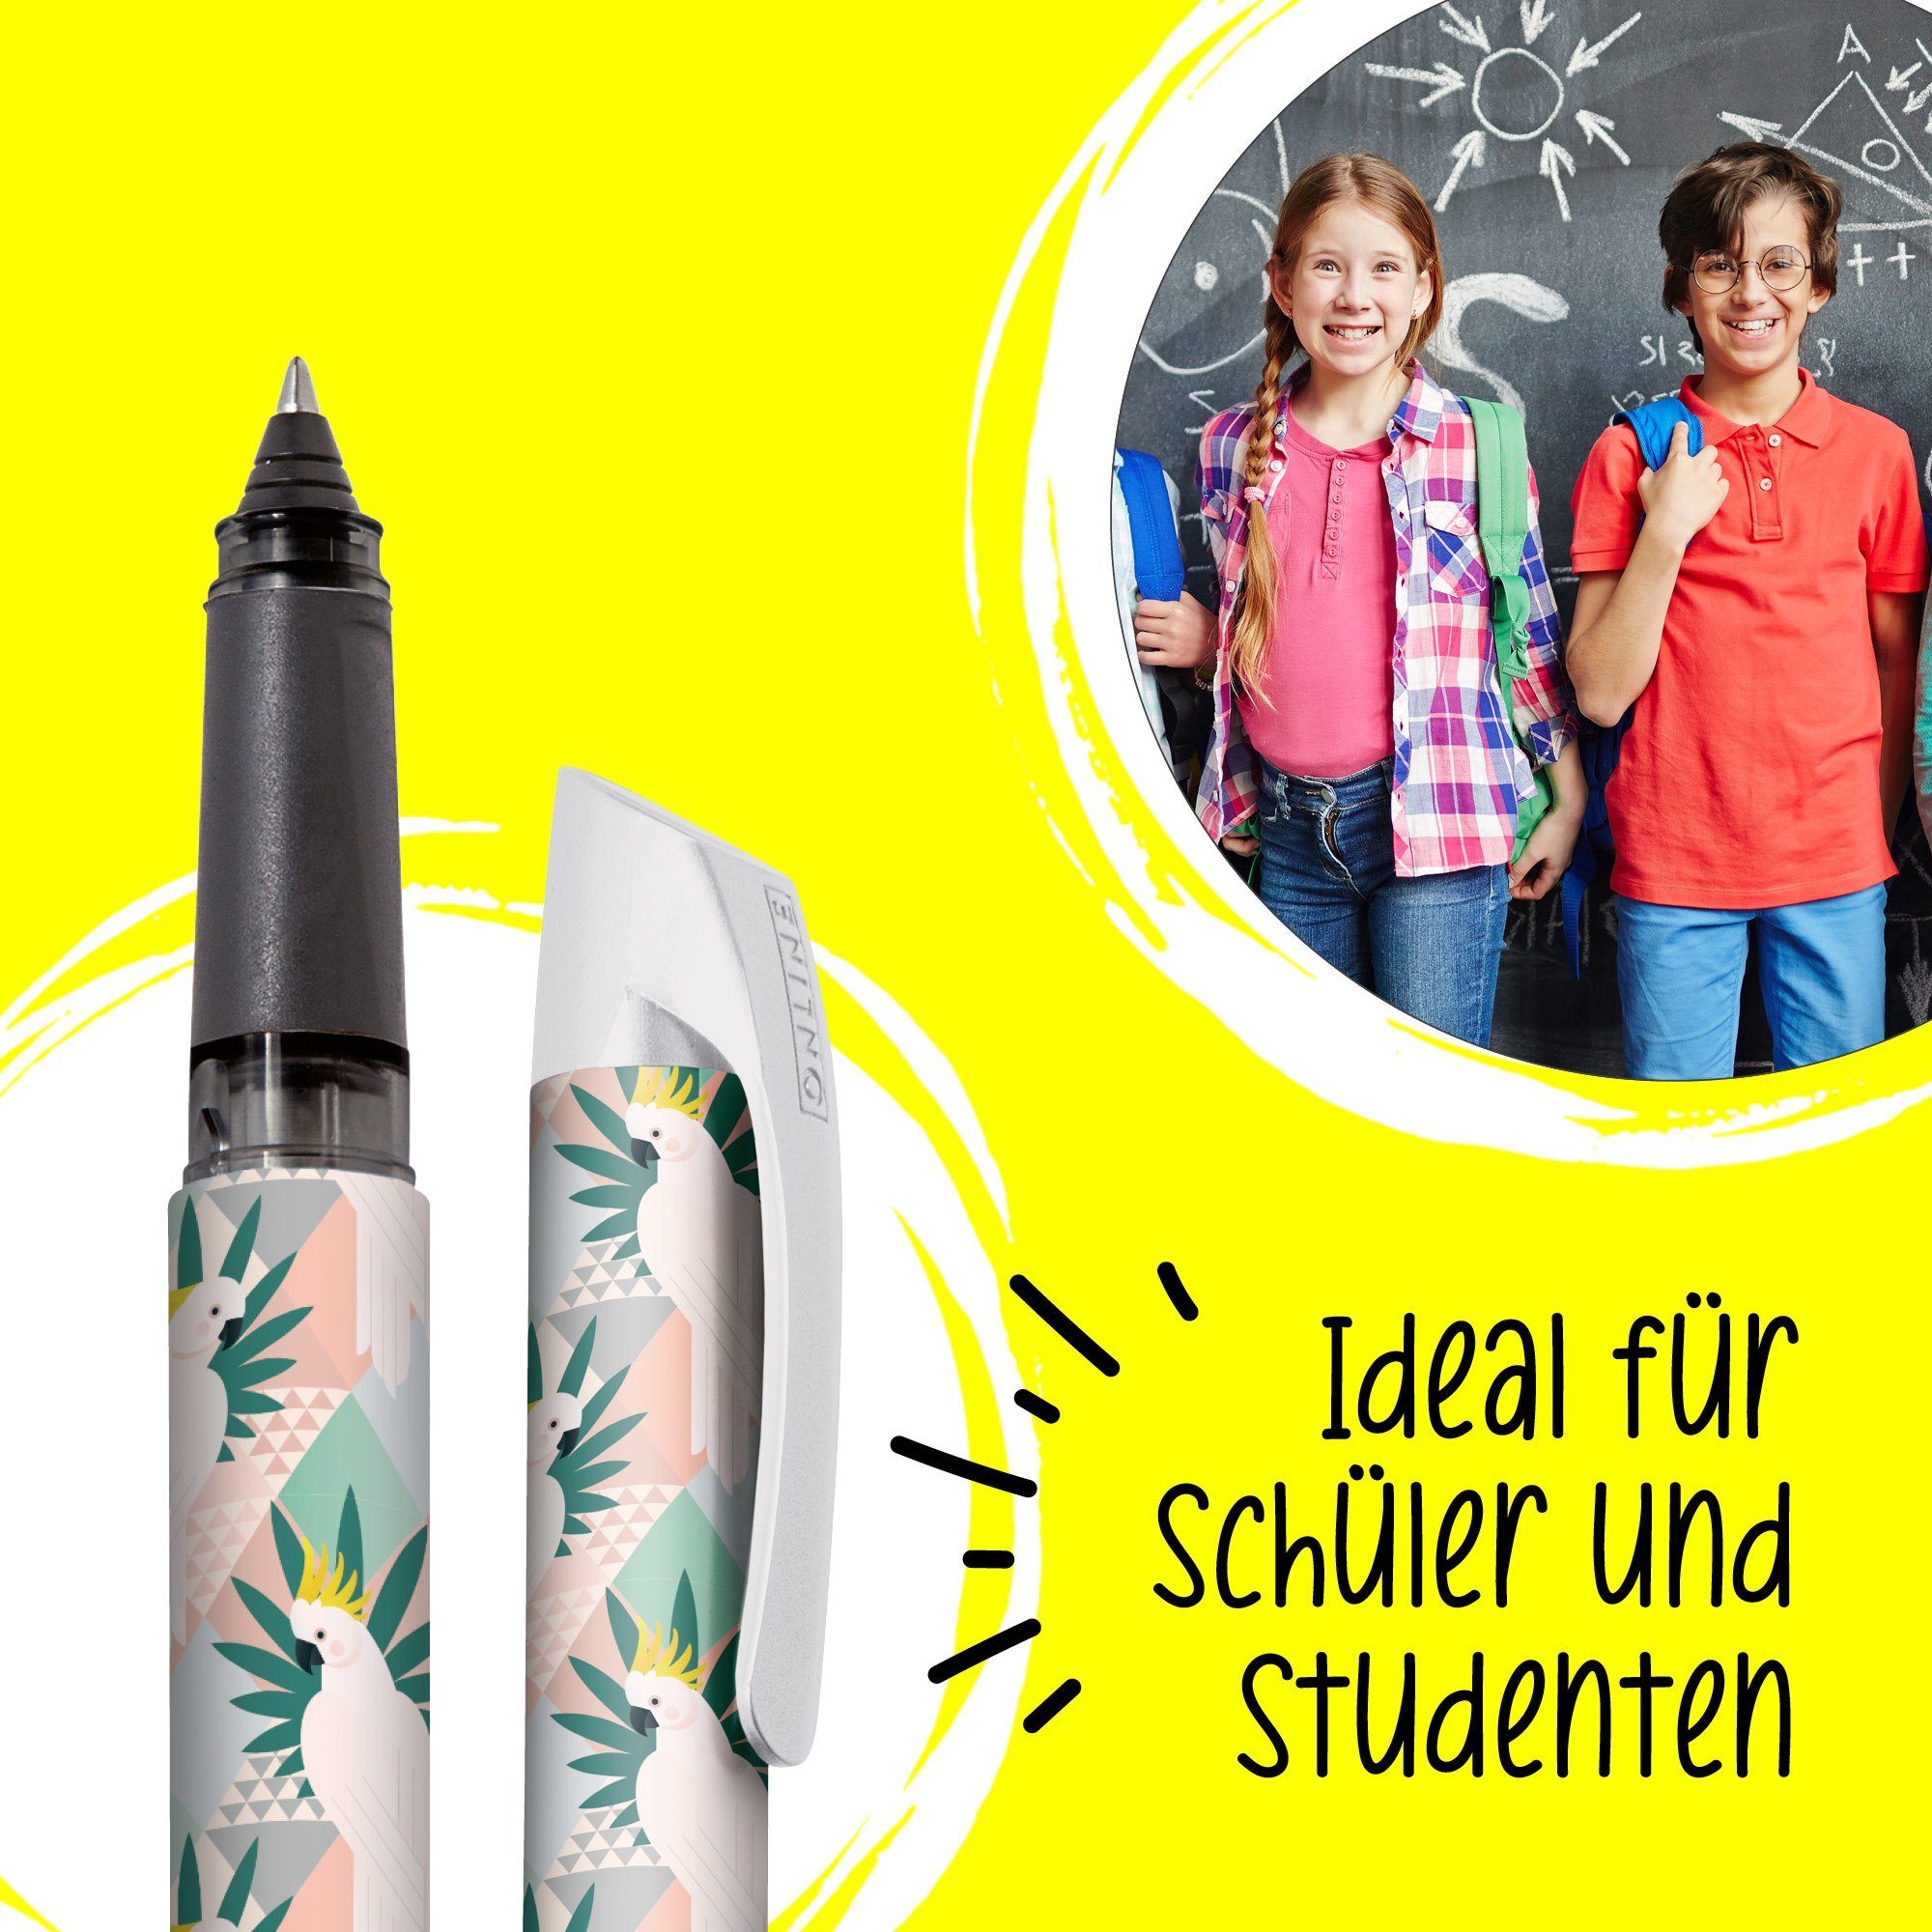 Deutschland ideal für Tintenroller Schule, Tintenpatronen-Rollerball, hergestellt Pen Online Papageien ergonomisch, die Campus in